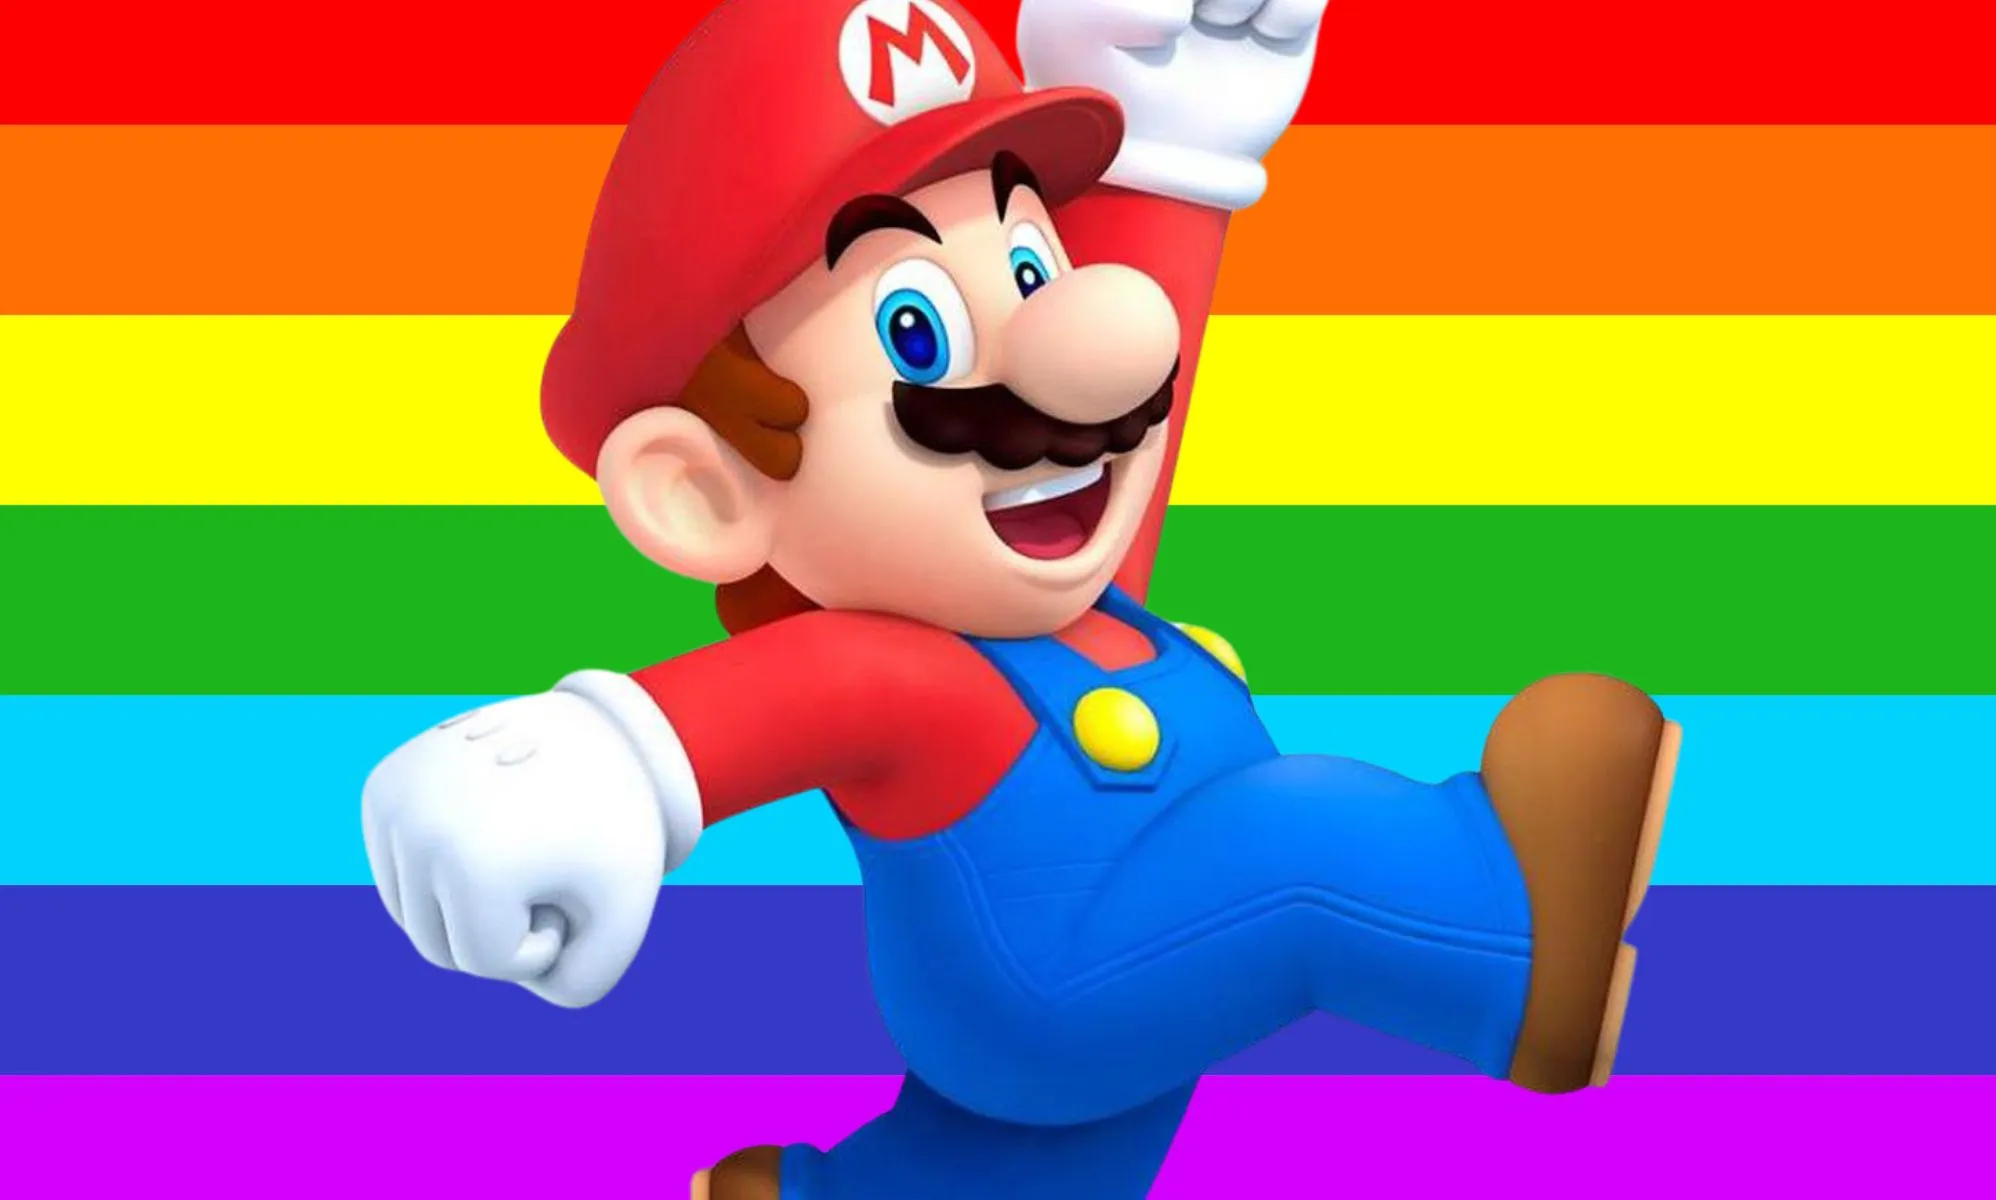 La problemática función de inteligencia artificial de Google está convirtiendo a los personajes de Nintendo en homosexuales y trans con resultados sorprendentes